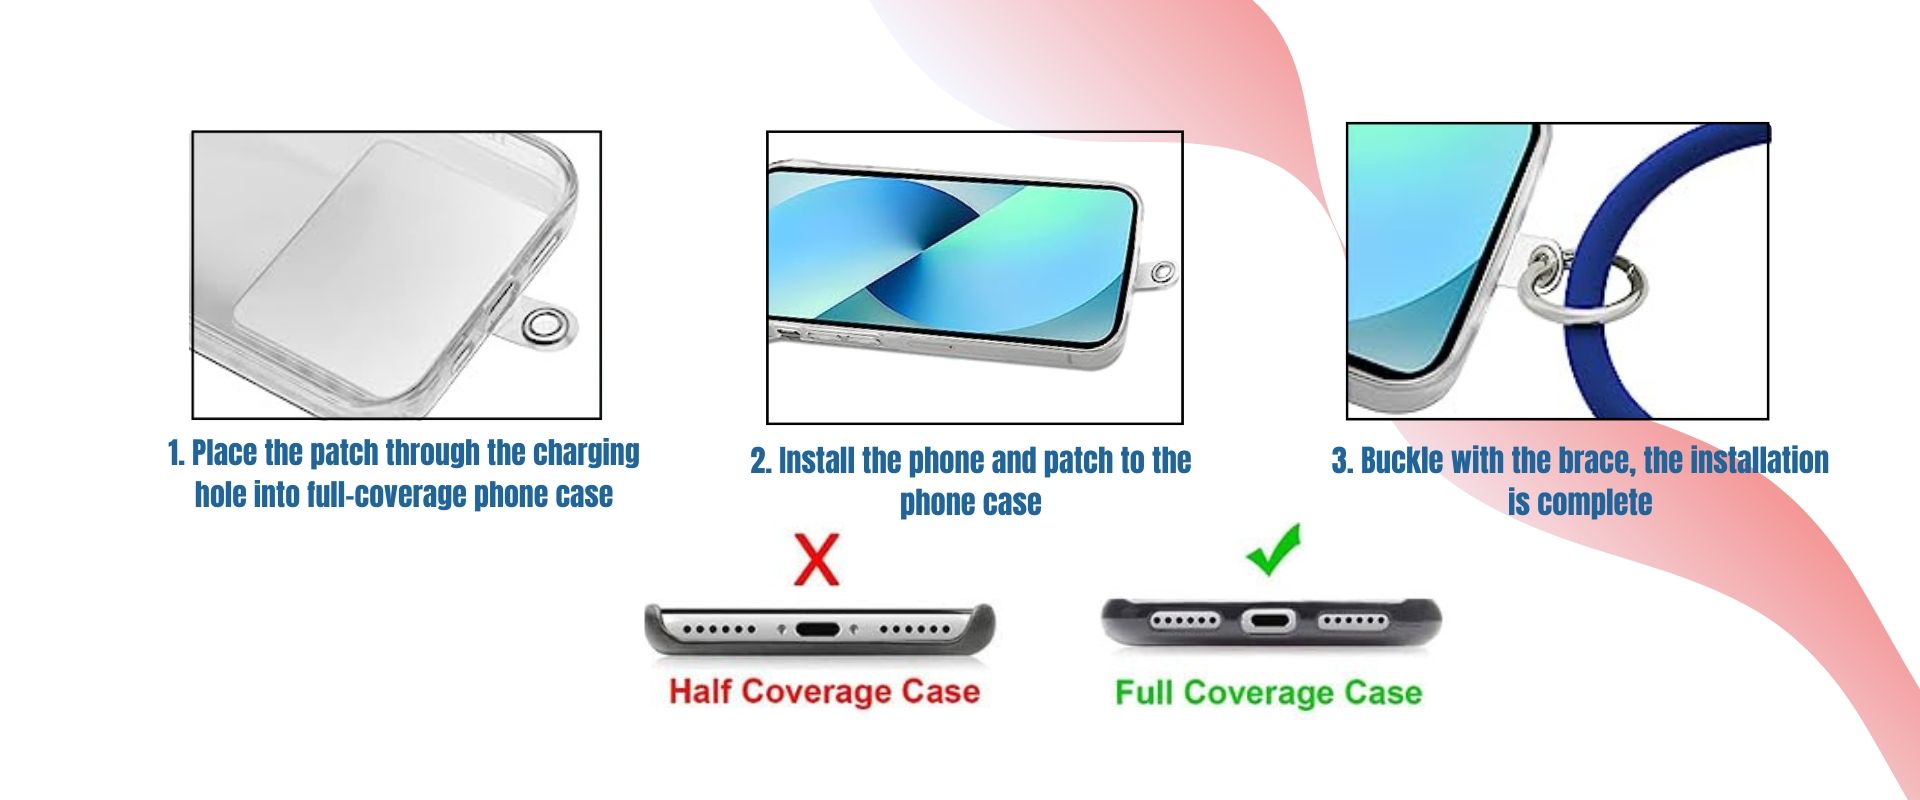 सिलिकॉन रिंग फोन लैनयर्ड कस्टम आकार के साथ हो सकता है।